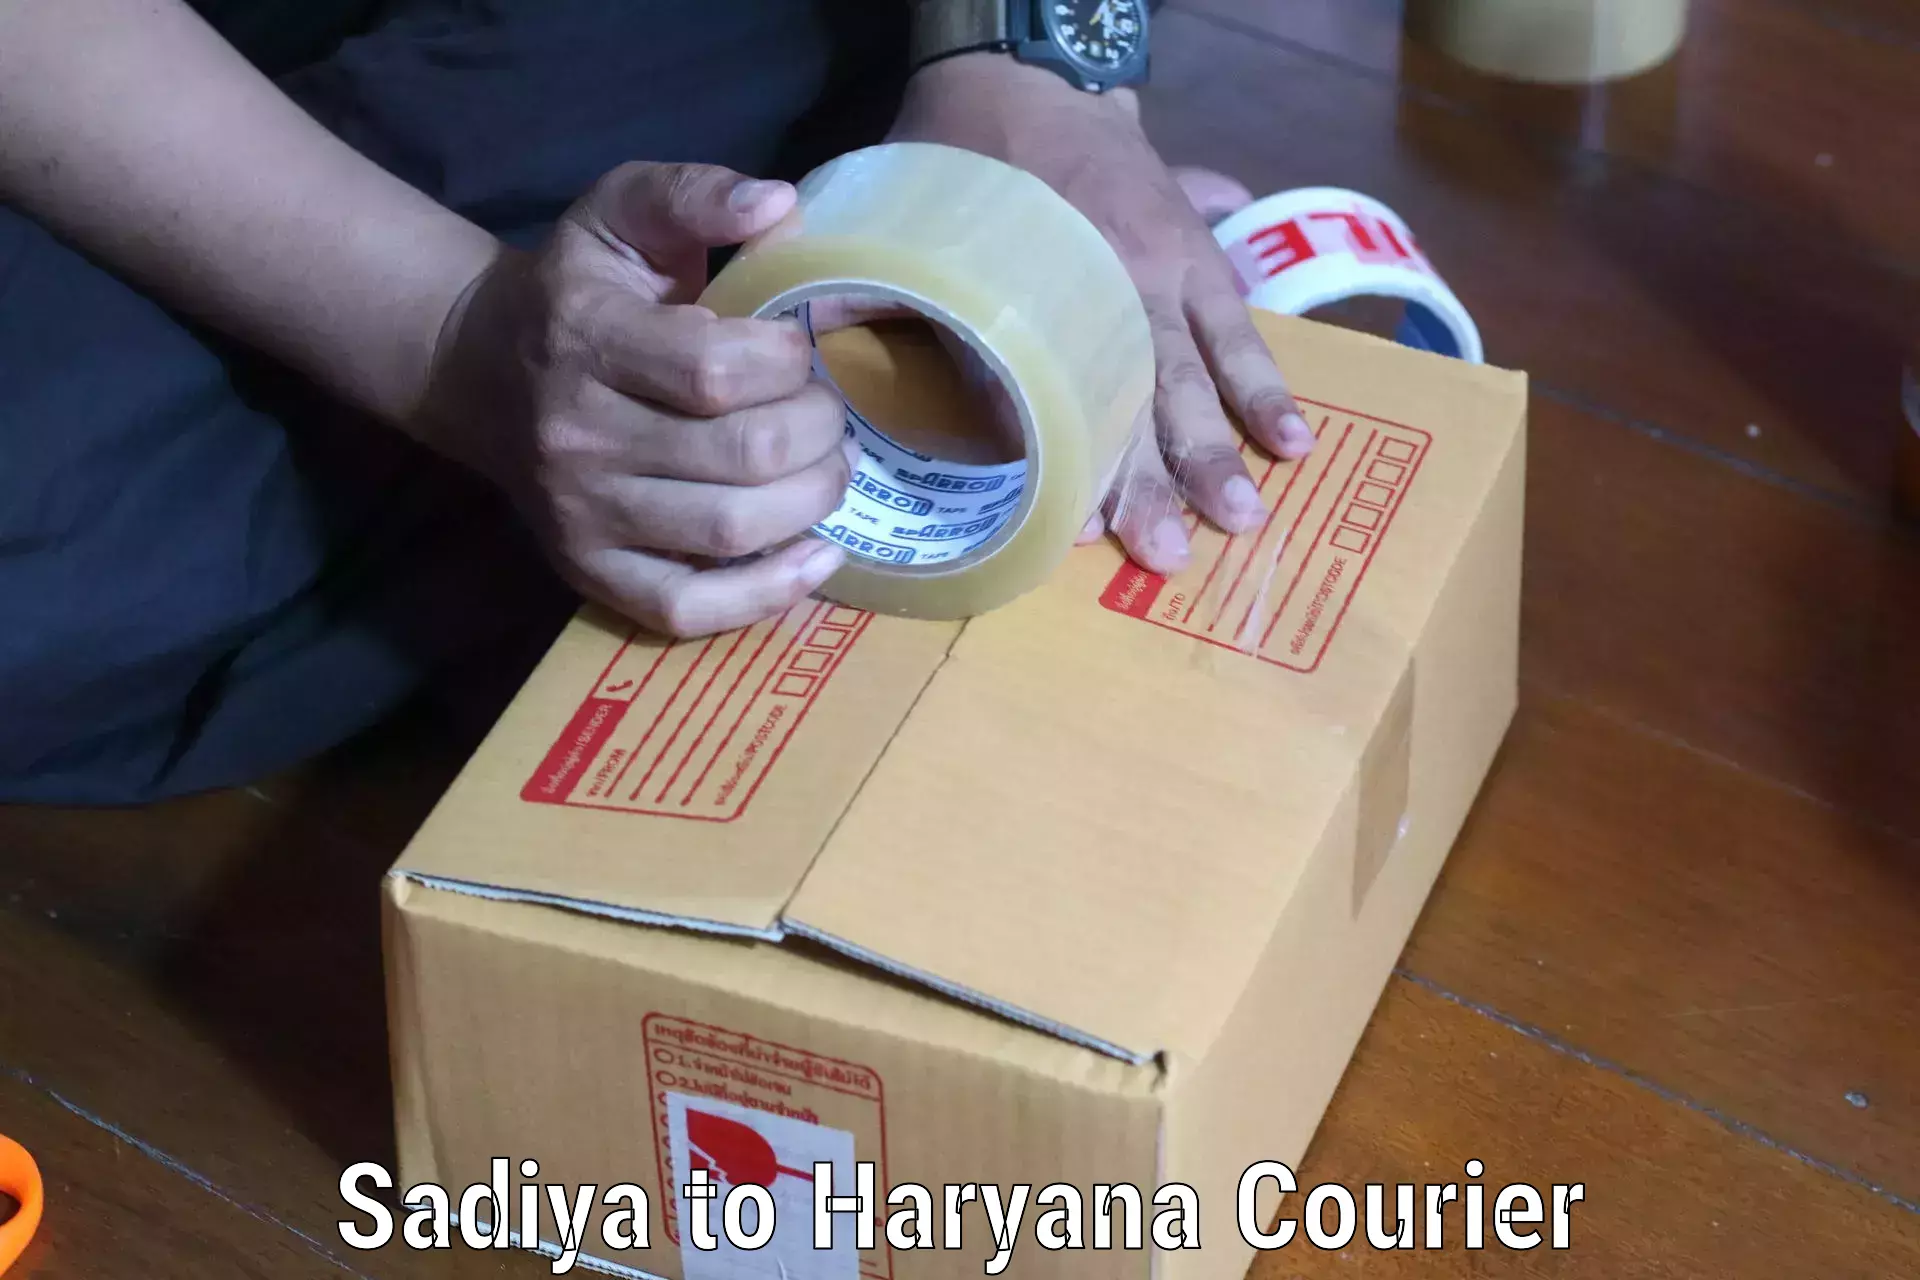 Global logistics network Sadiya to Chirya